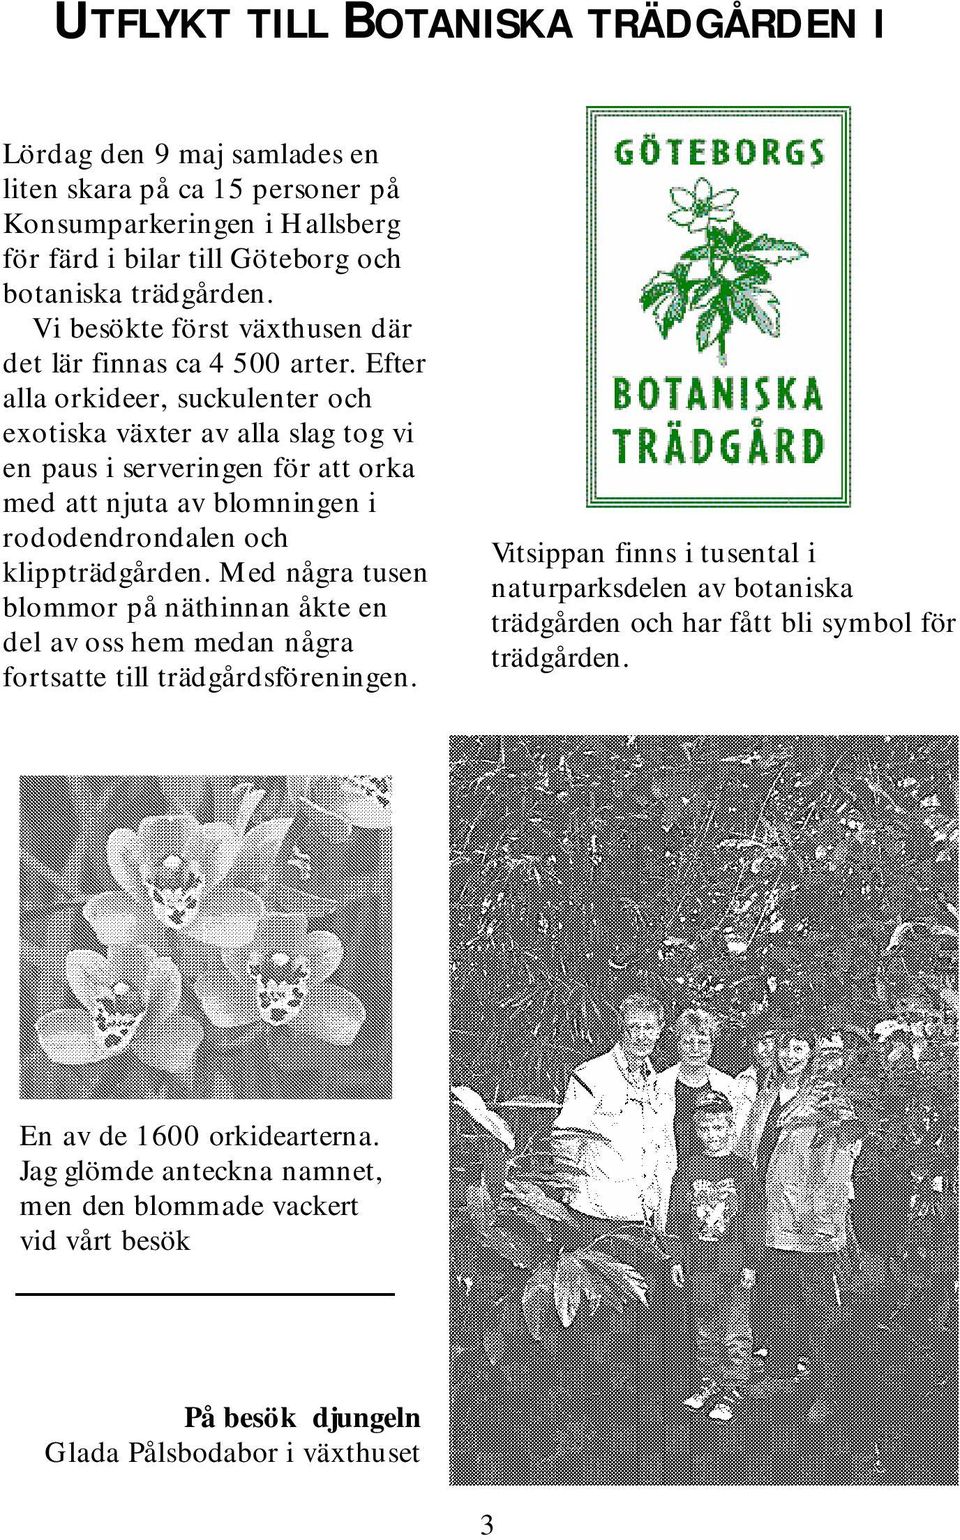 efter alla orkideer,suckulenteroch exotiska växterav alla slag tog vi en pausiserveringen förattorka m ed attnjuta av blom ningen i rododendrondalen och klippträdgården.